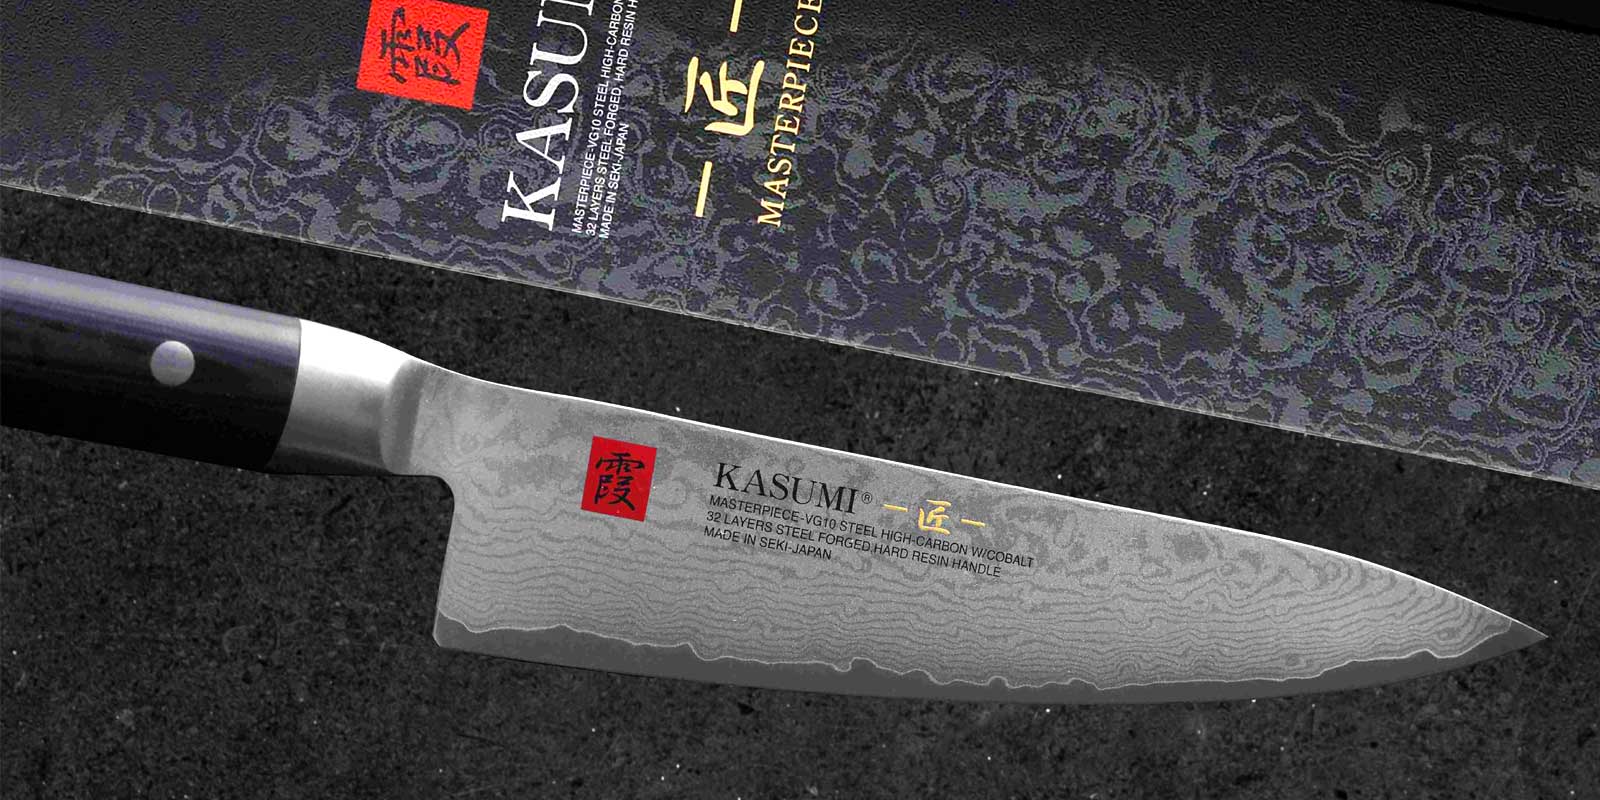 cuchillo kasumi La capa intermedia de las hojas KASUMI MP esta hecha del mejor acero japones VG10, con cobalto y un mayor contenido de carbono, desarrollado exclusivamente para la produccion de cuchillos de cocina de muy alta calidad. Despues del forjado, las hojas se calientan de nuevo a unos 800 °C, luego se enfrian rapidamente de nuevo y asi se endurecen Rockwell a unos 59-60 °C. La dureza de 59-60 HRC no solo se considera la dureza optima para los cuchillos de cocina en Japon. Con un muy buen afilado, permite que el filo tenga una vida util muy larga (retencion del corte, no se desafila tan rapidamente), pero tambien permite un facil reafilado con las piedras de afilar SUMIKAMA.